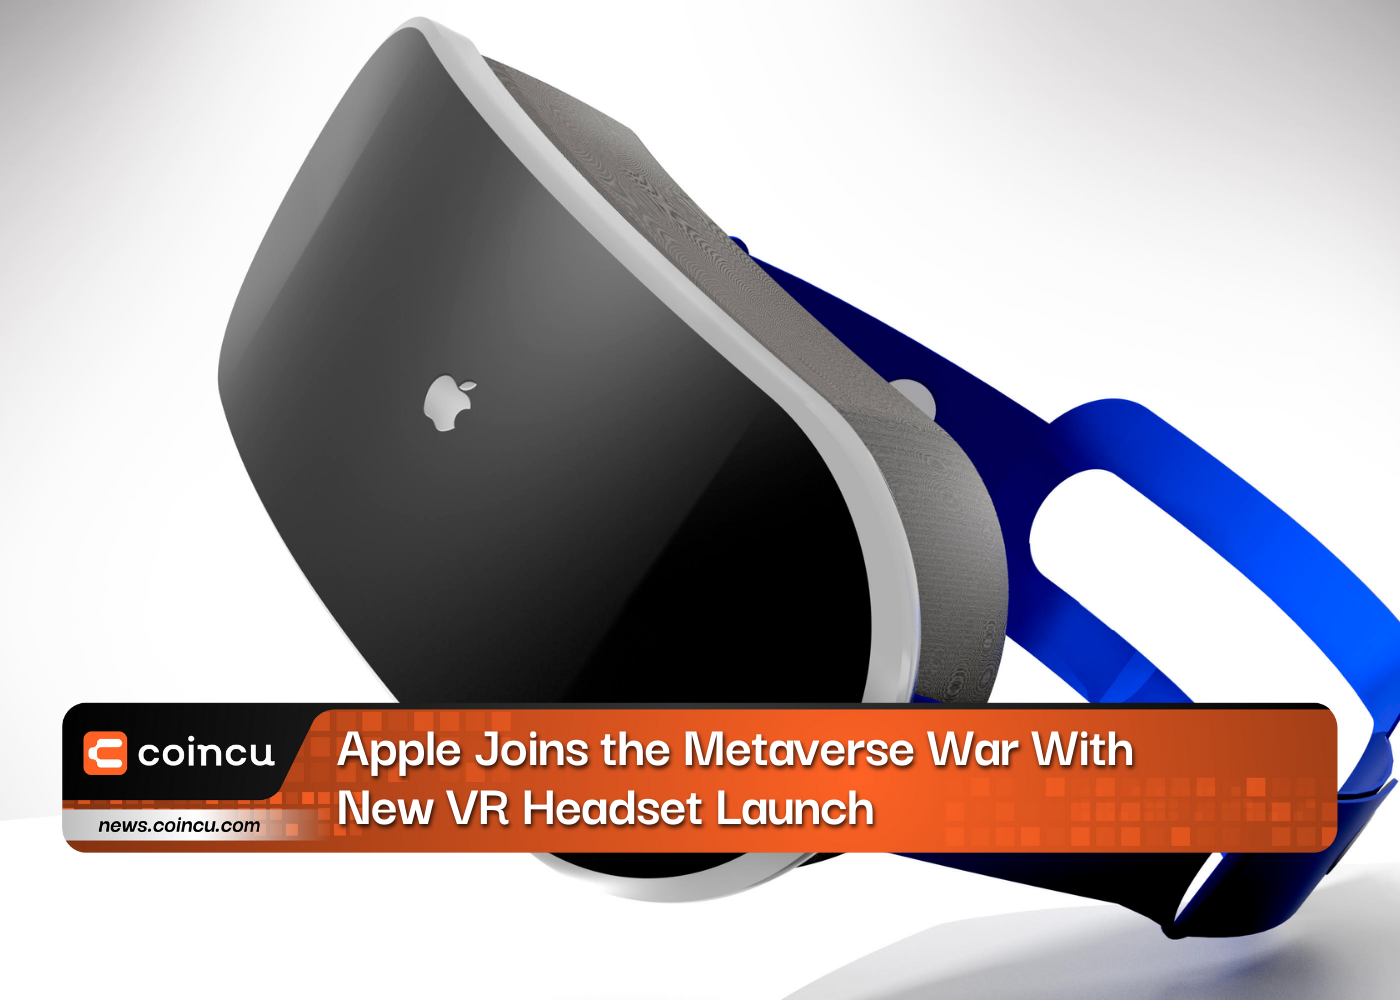 Apple присоединяется к войне Метавселенной, выпустив новую VR-гарнитуру